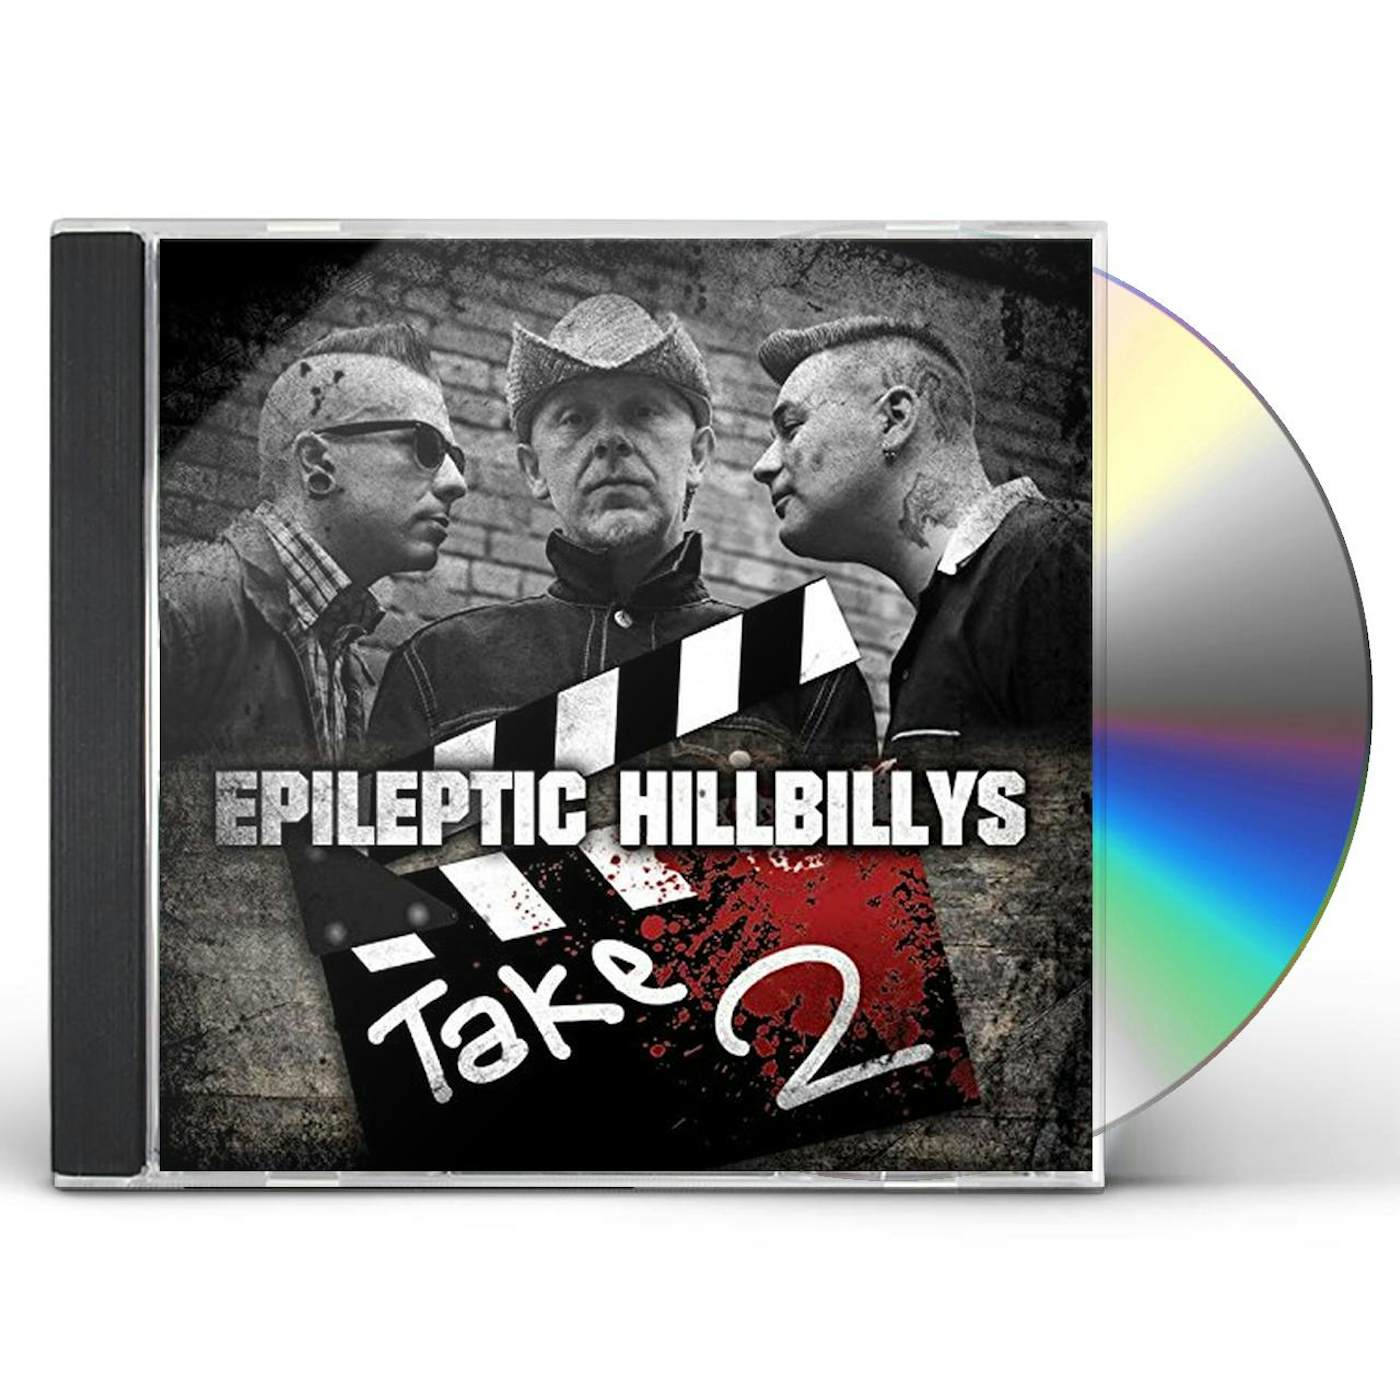 EPILEPTIC HILLBILLYS TAKE 2 CD